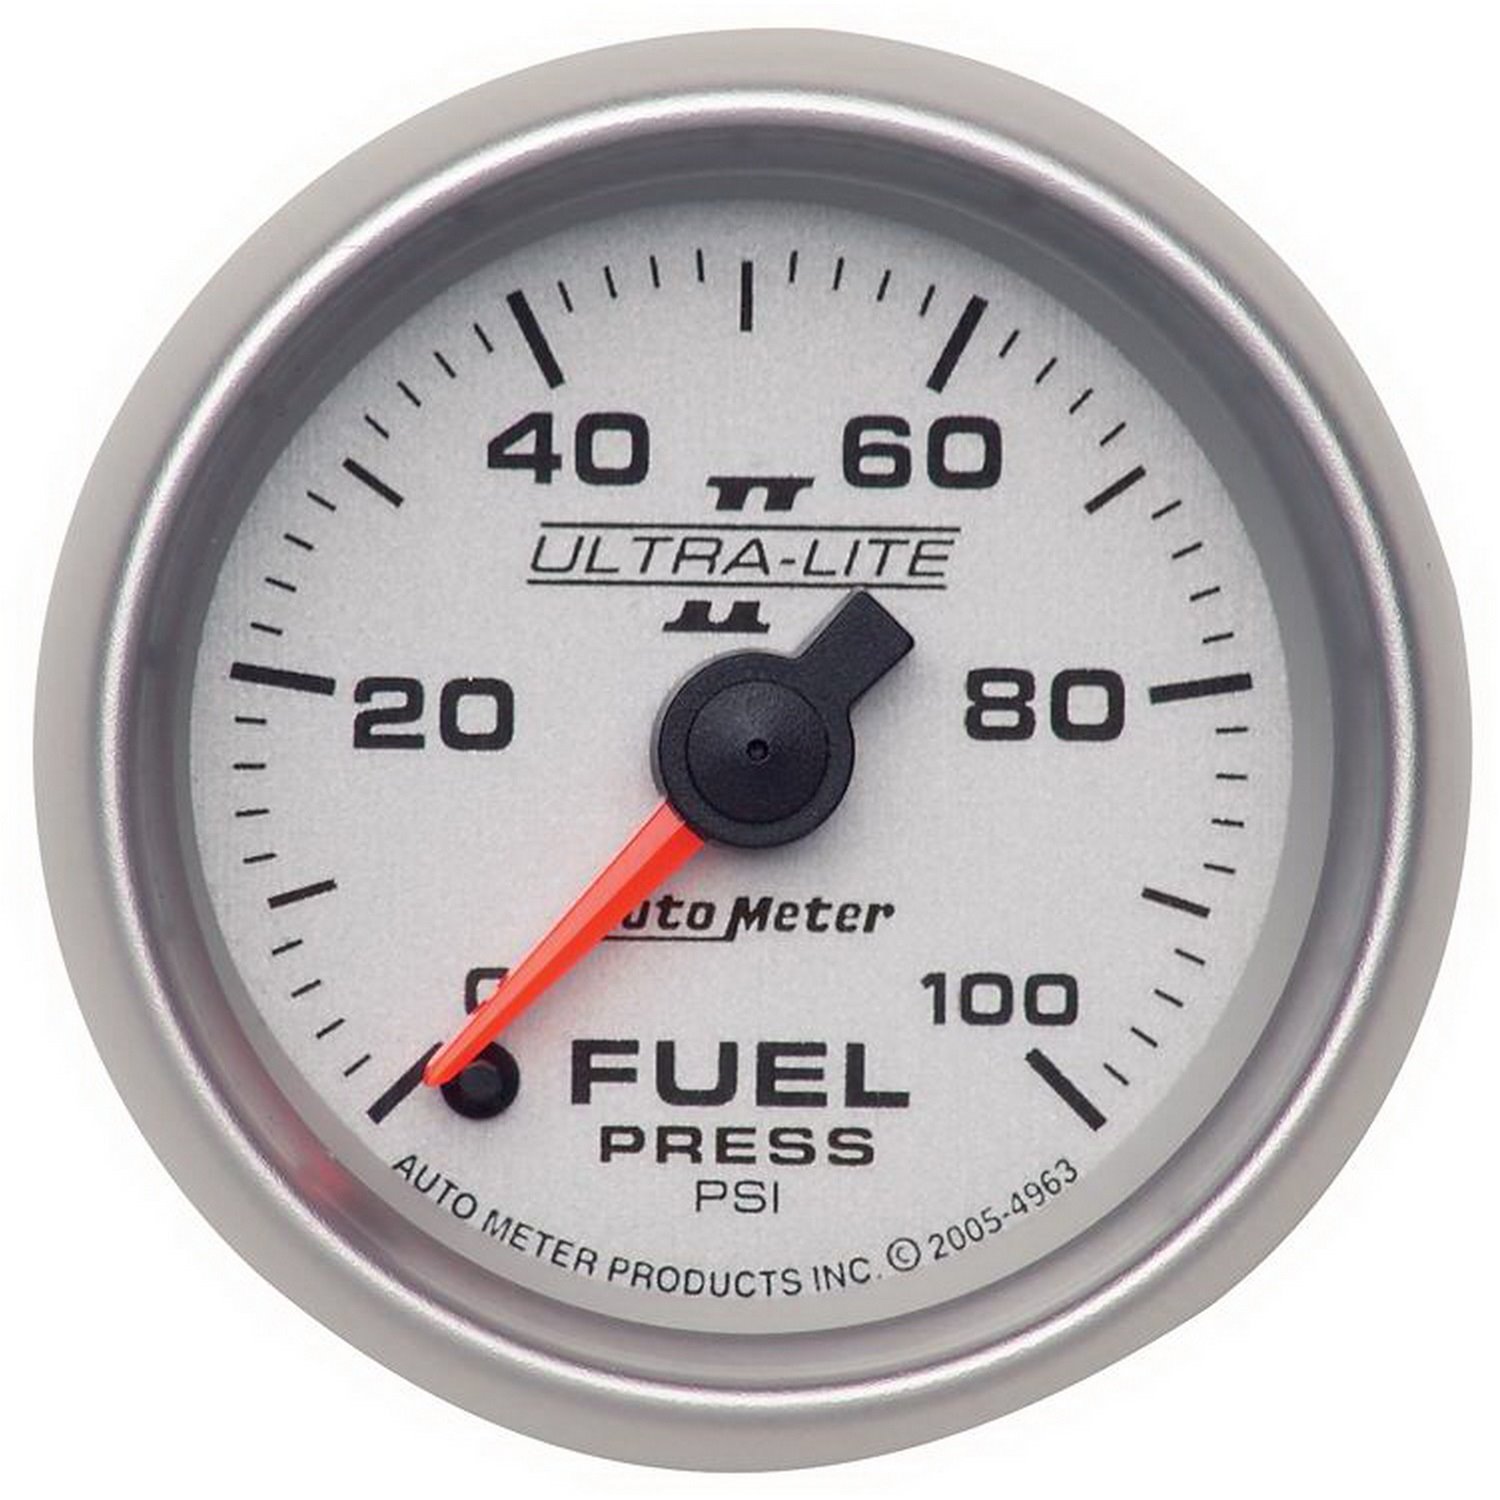 Ultra-Lite II Fuel Pressure Gauge 2-1/16" full sweep electrical